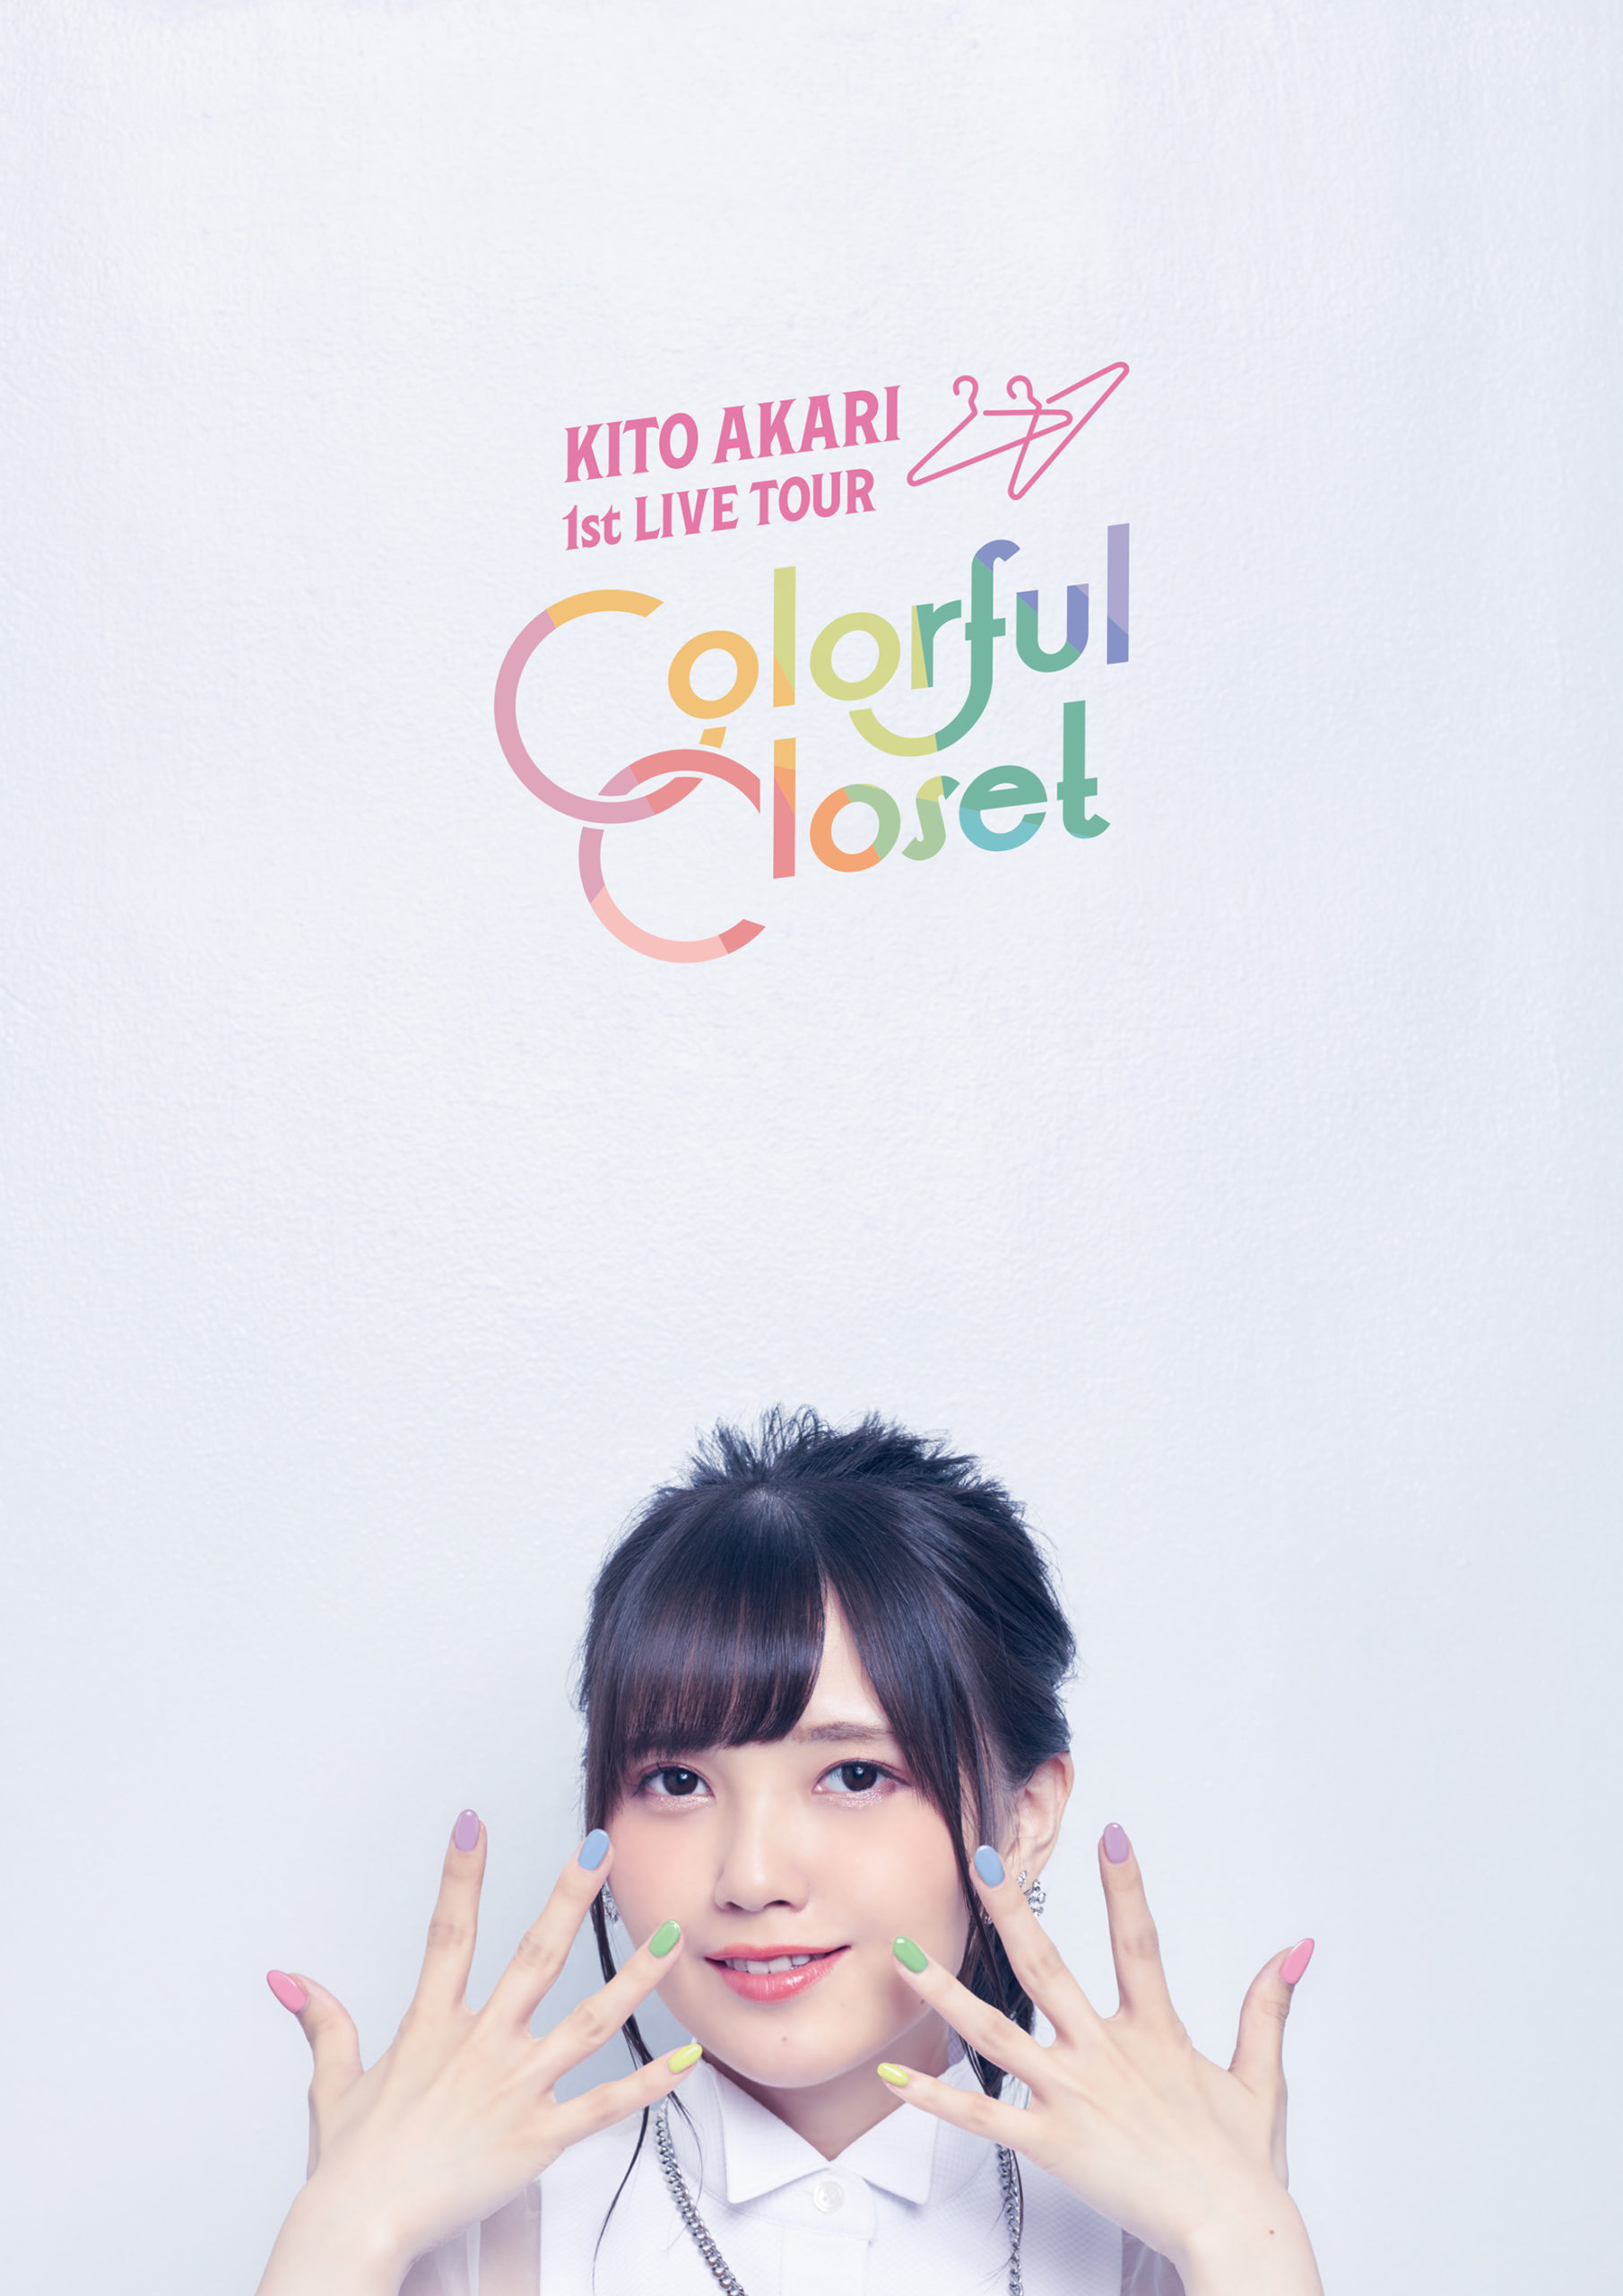 鬼頭明里 1st LIVE TOUR「Colorful Closet」パンフレット、電子書籍化 ...